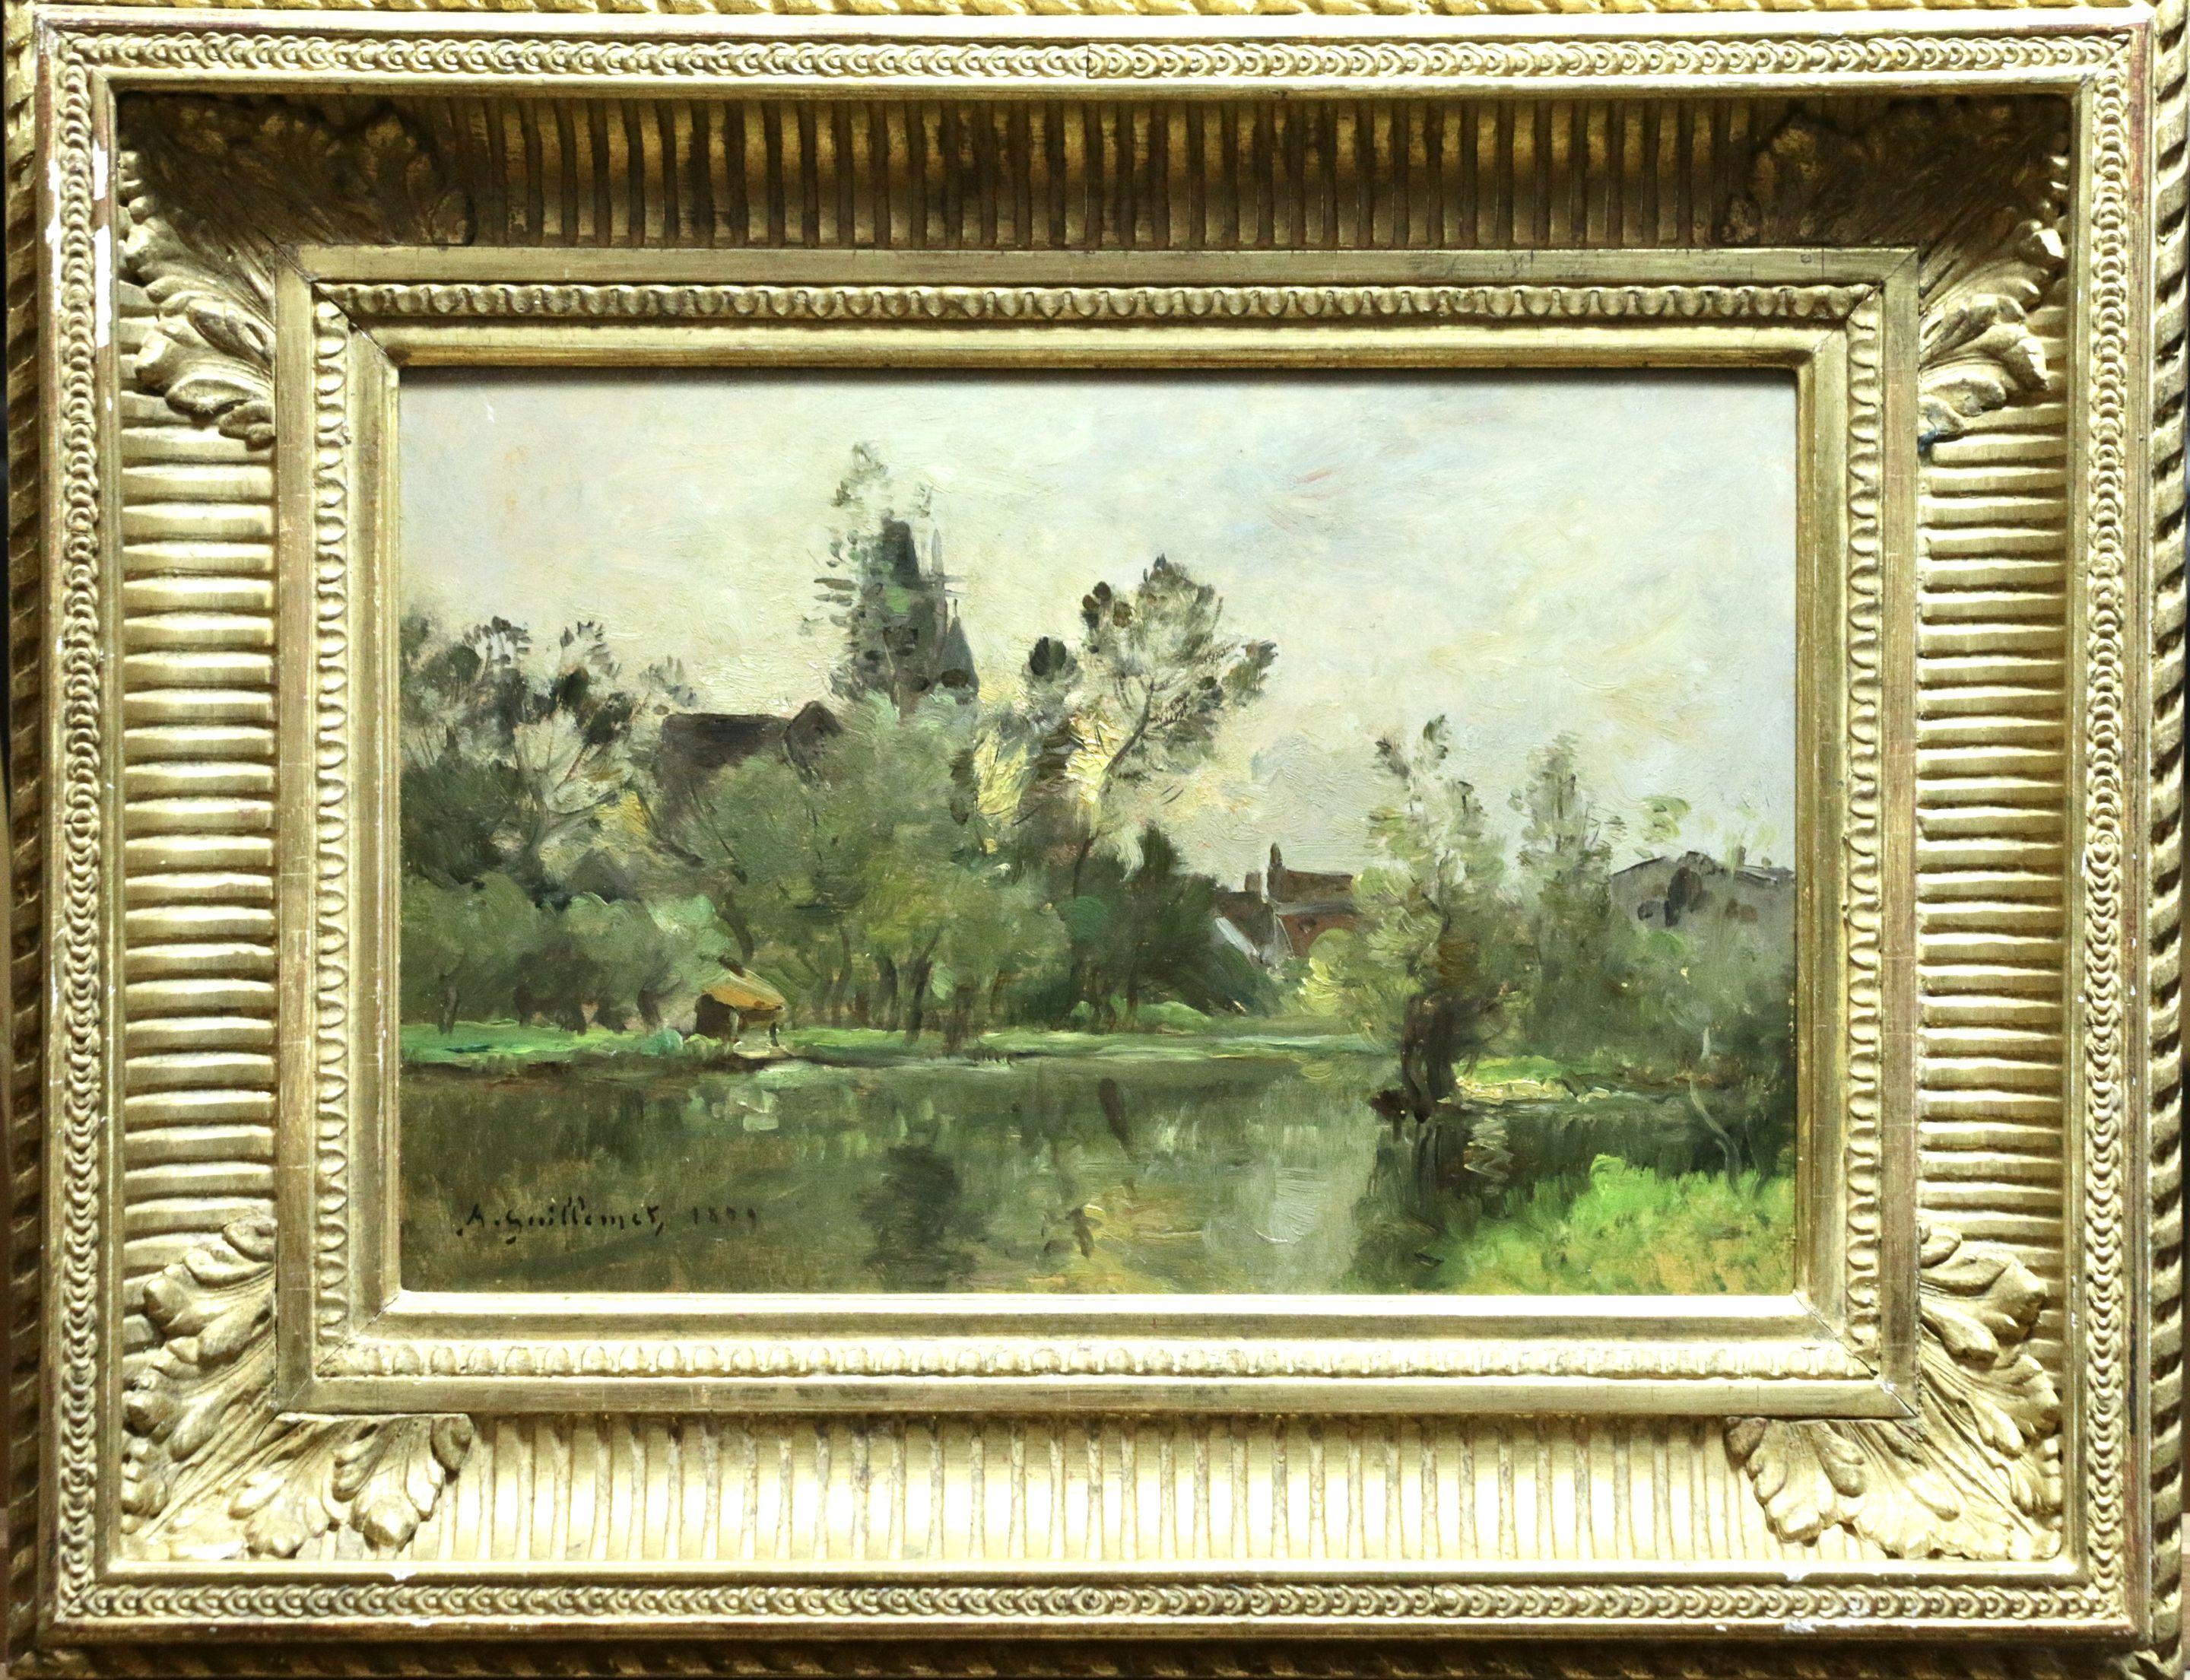 Coucher de Soleil-Moret-1899 - 19th Century Oil, Riverscape by Guillemet - Painting by Jean-Baptiste-Antoine Guillemet